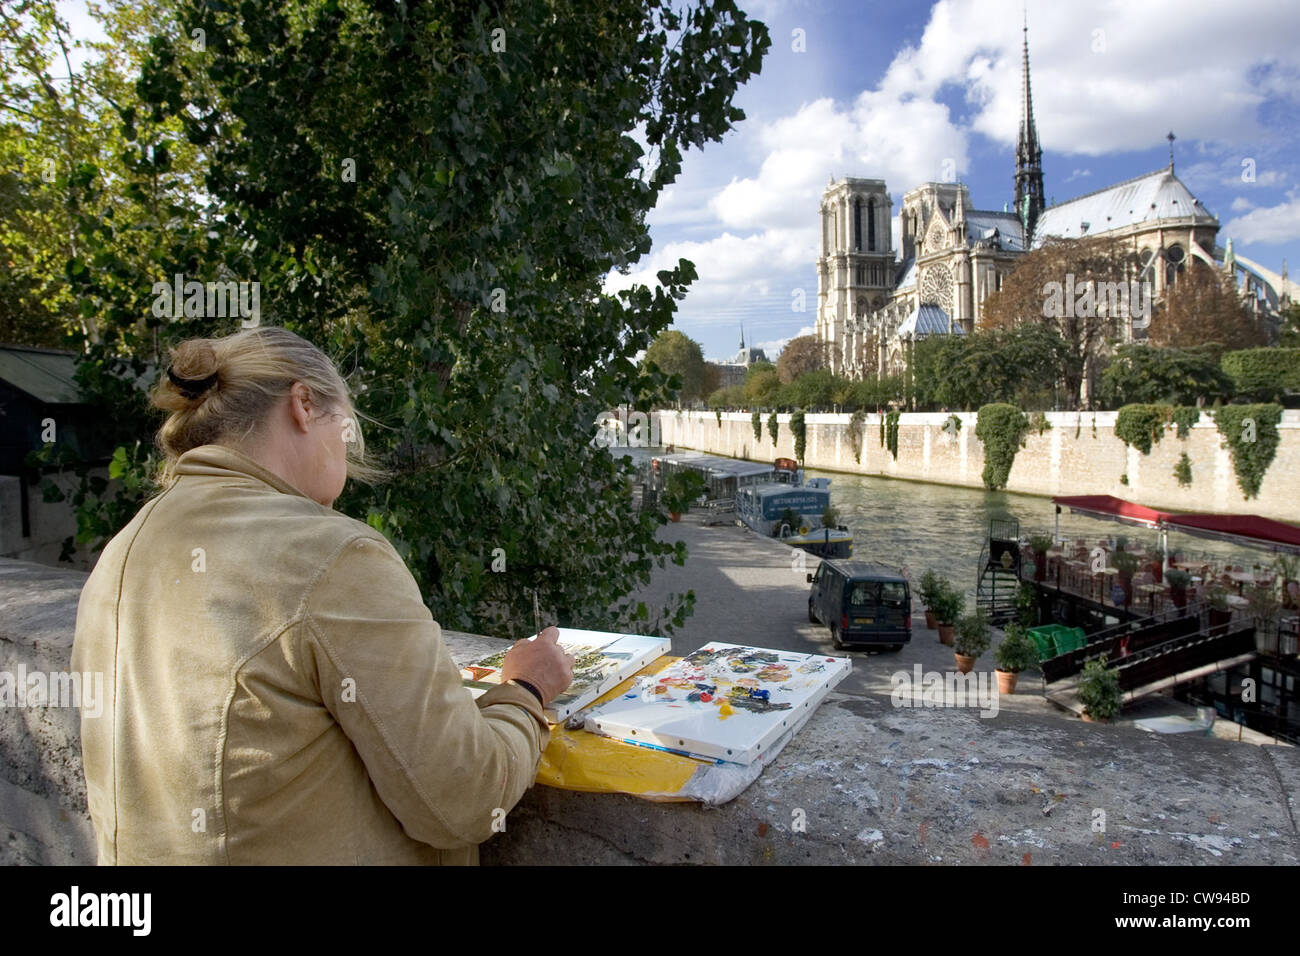 Paris, Artist paints the church of Notre Dame Stock Photo